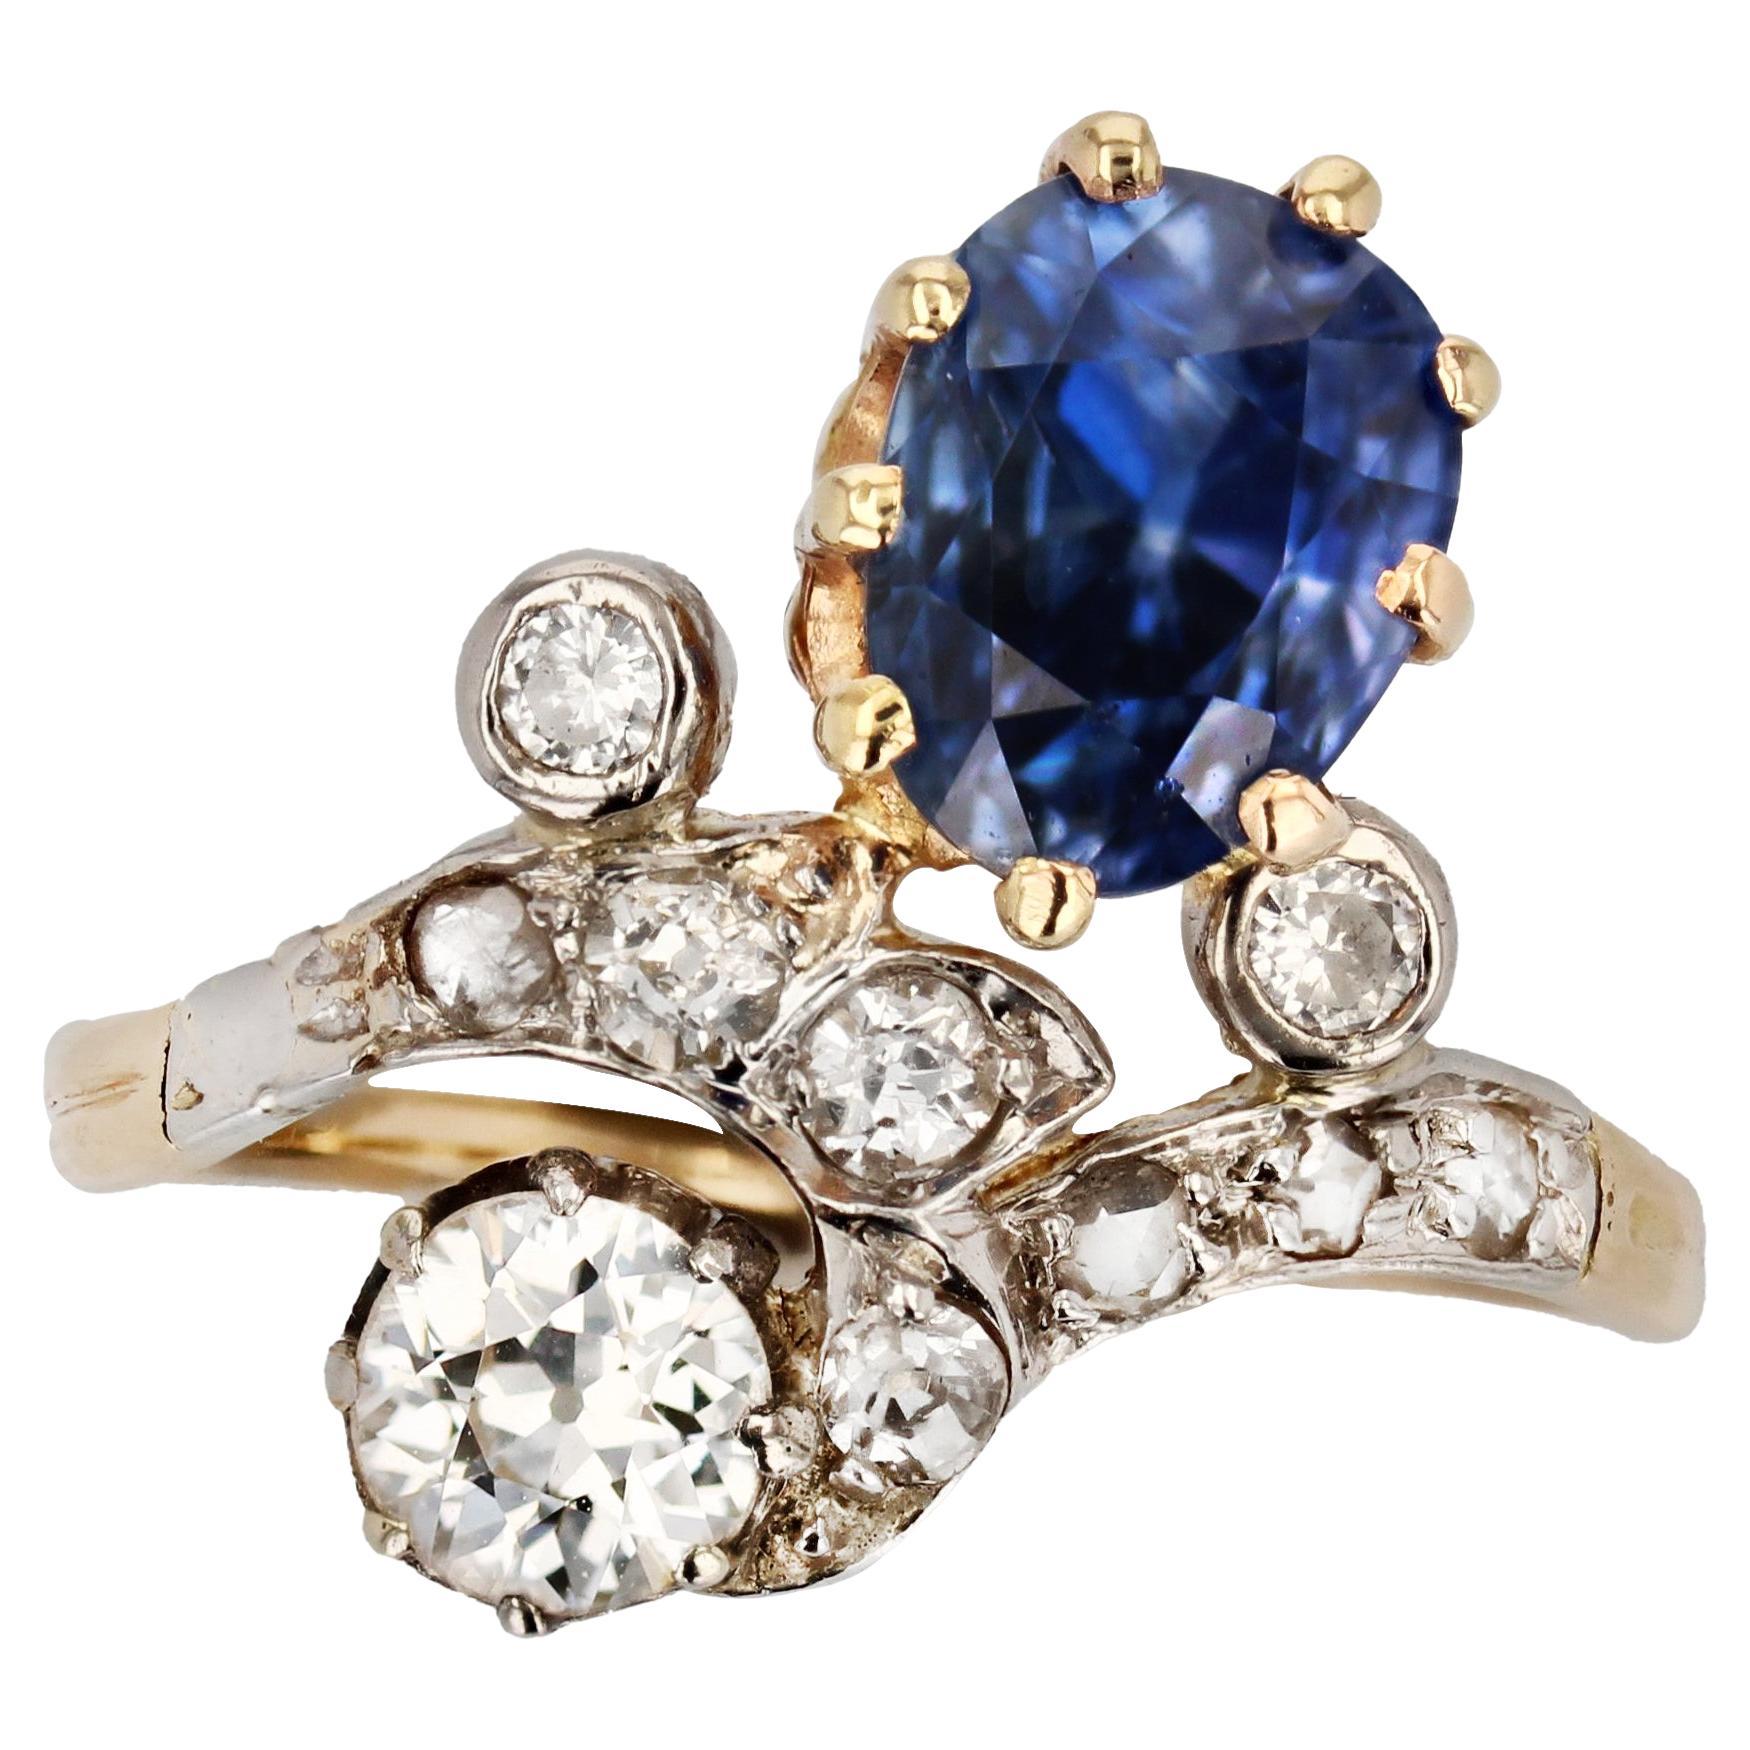 Herzogin-Ring aus 18 Karat Gelbgold mit Saphiren und Diamanten aus dem 19. Jahrhundert